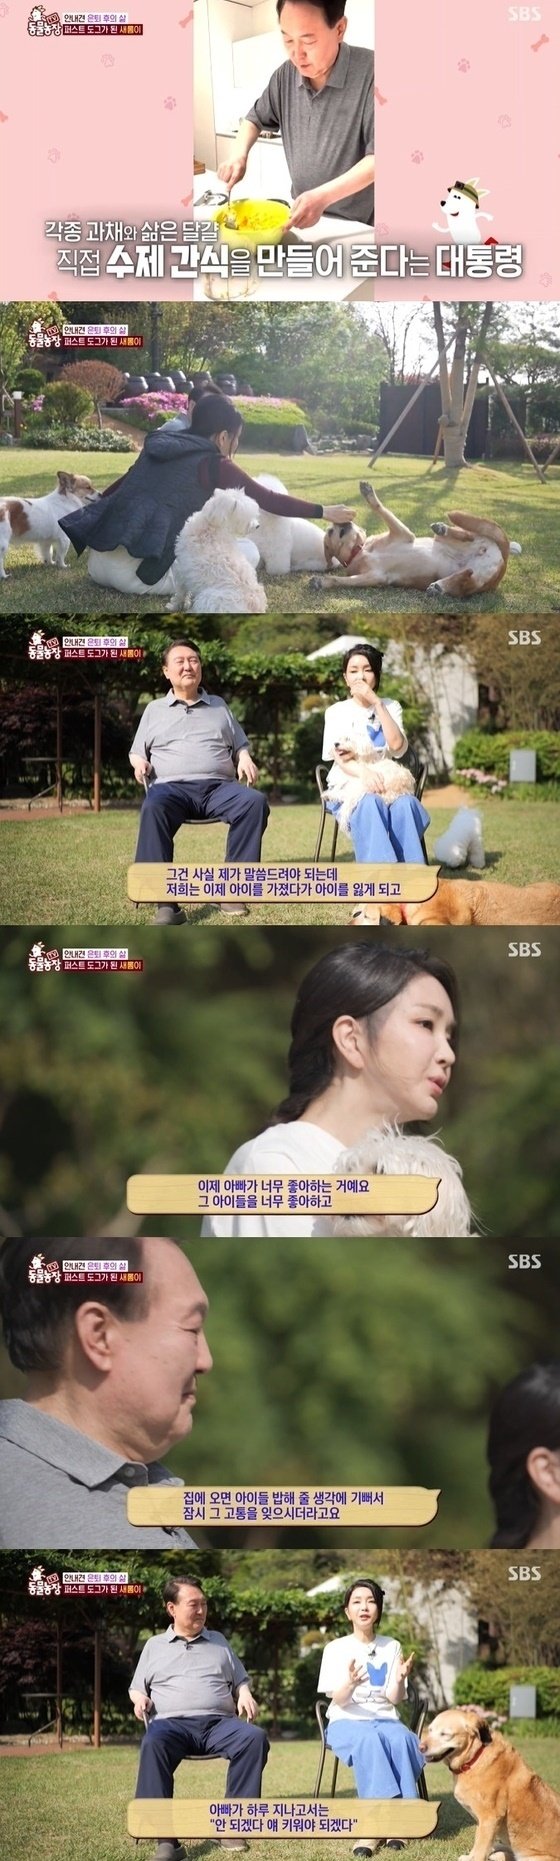 SBS 'TV 동물농장' 방송 화면 캡처